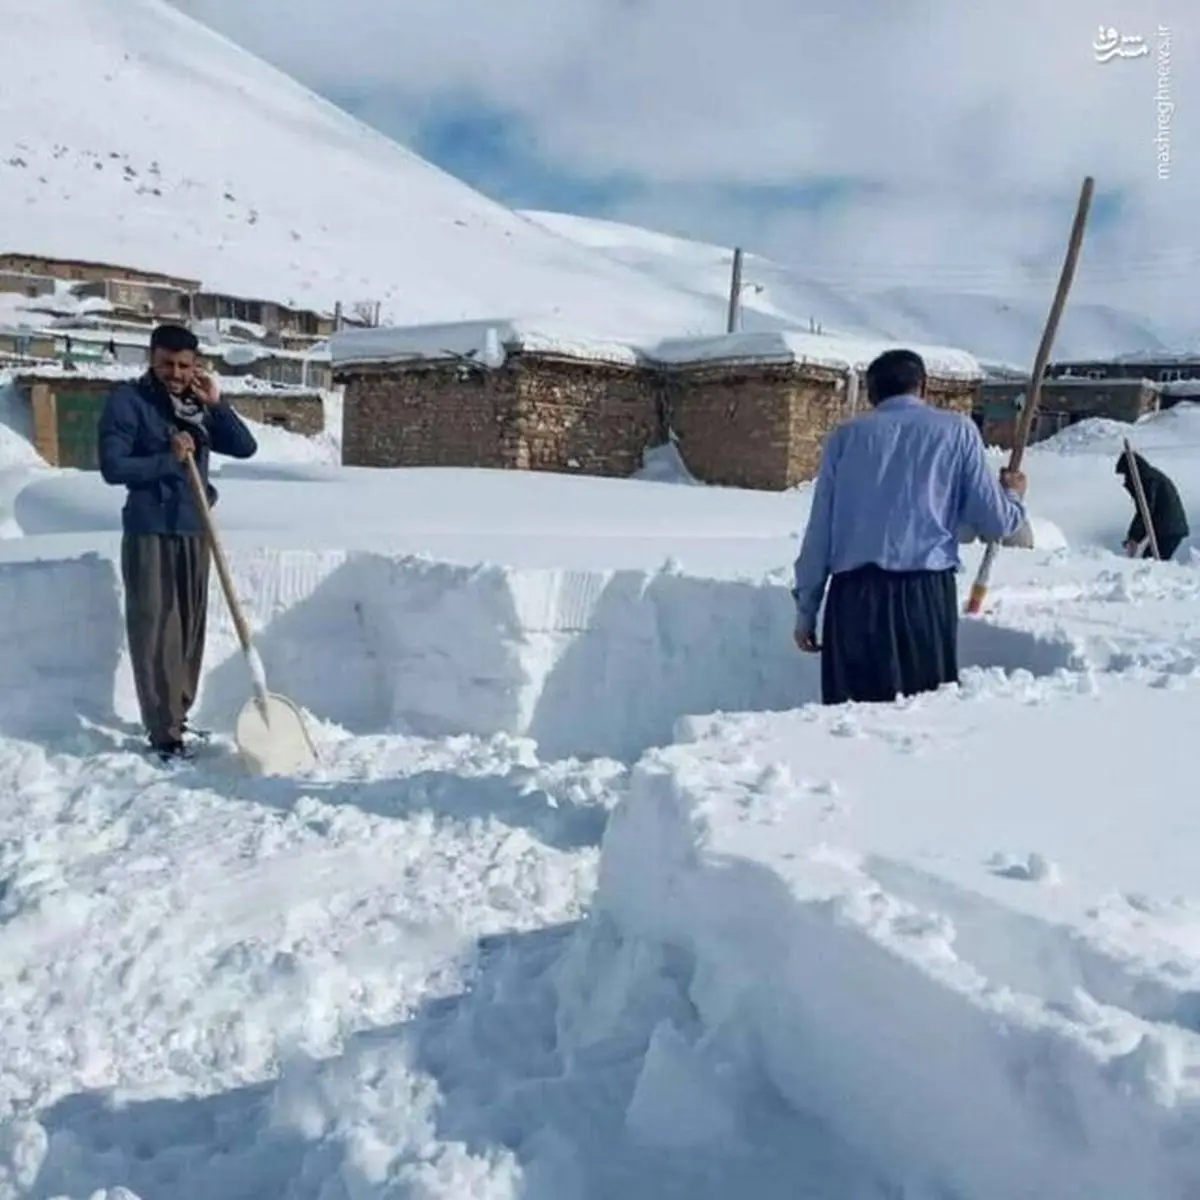 ارتفاع برف در برخی مناطق "سنقر" به یک متر رسید | راه 190 روستا مسدود است